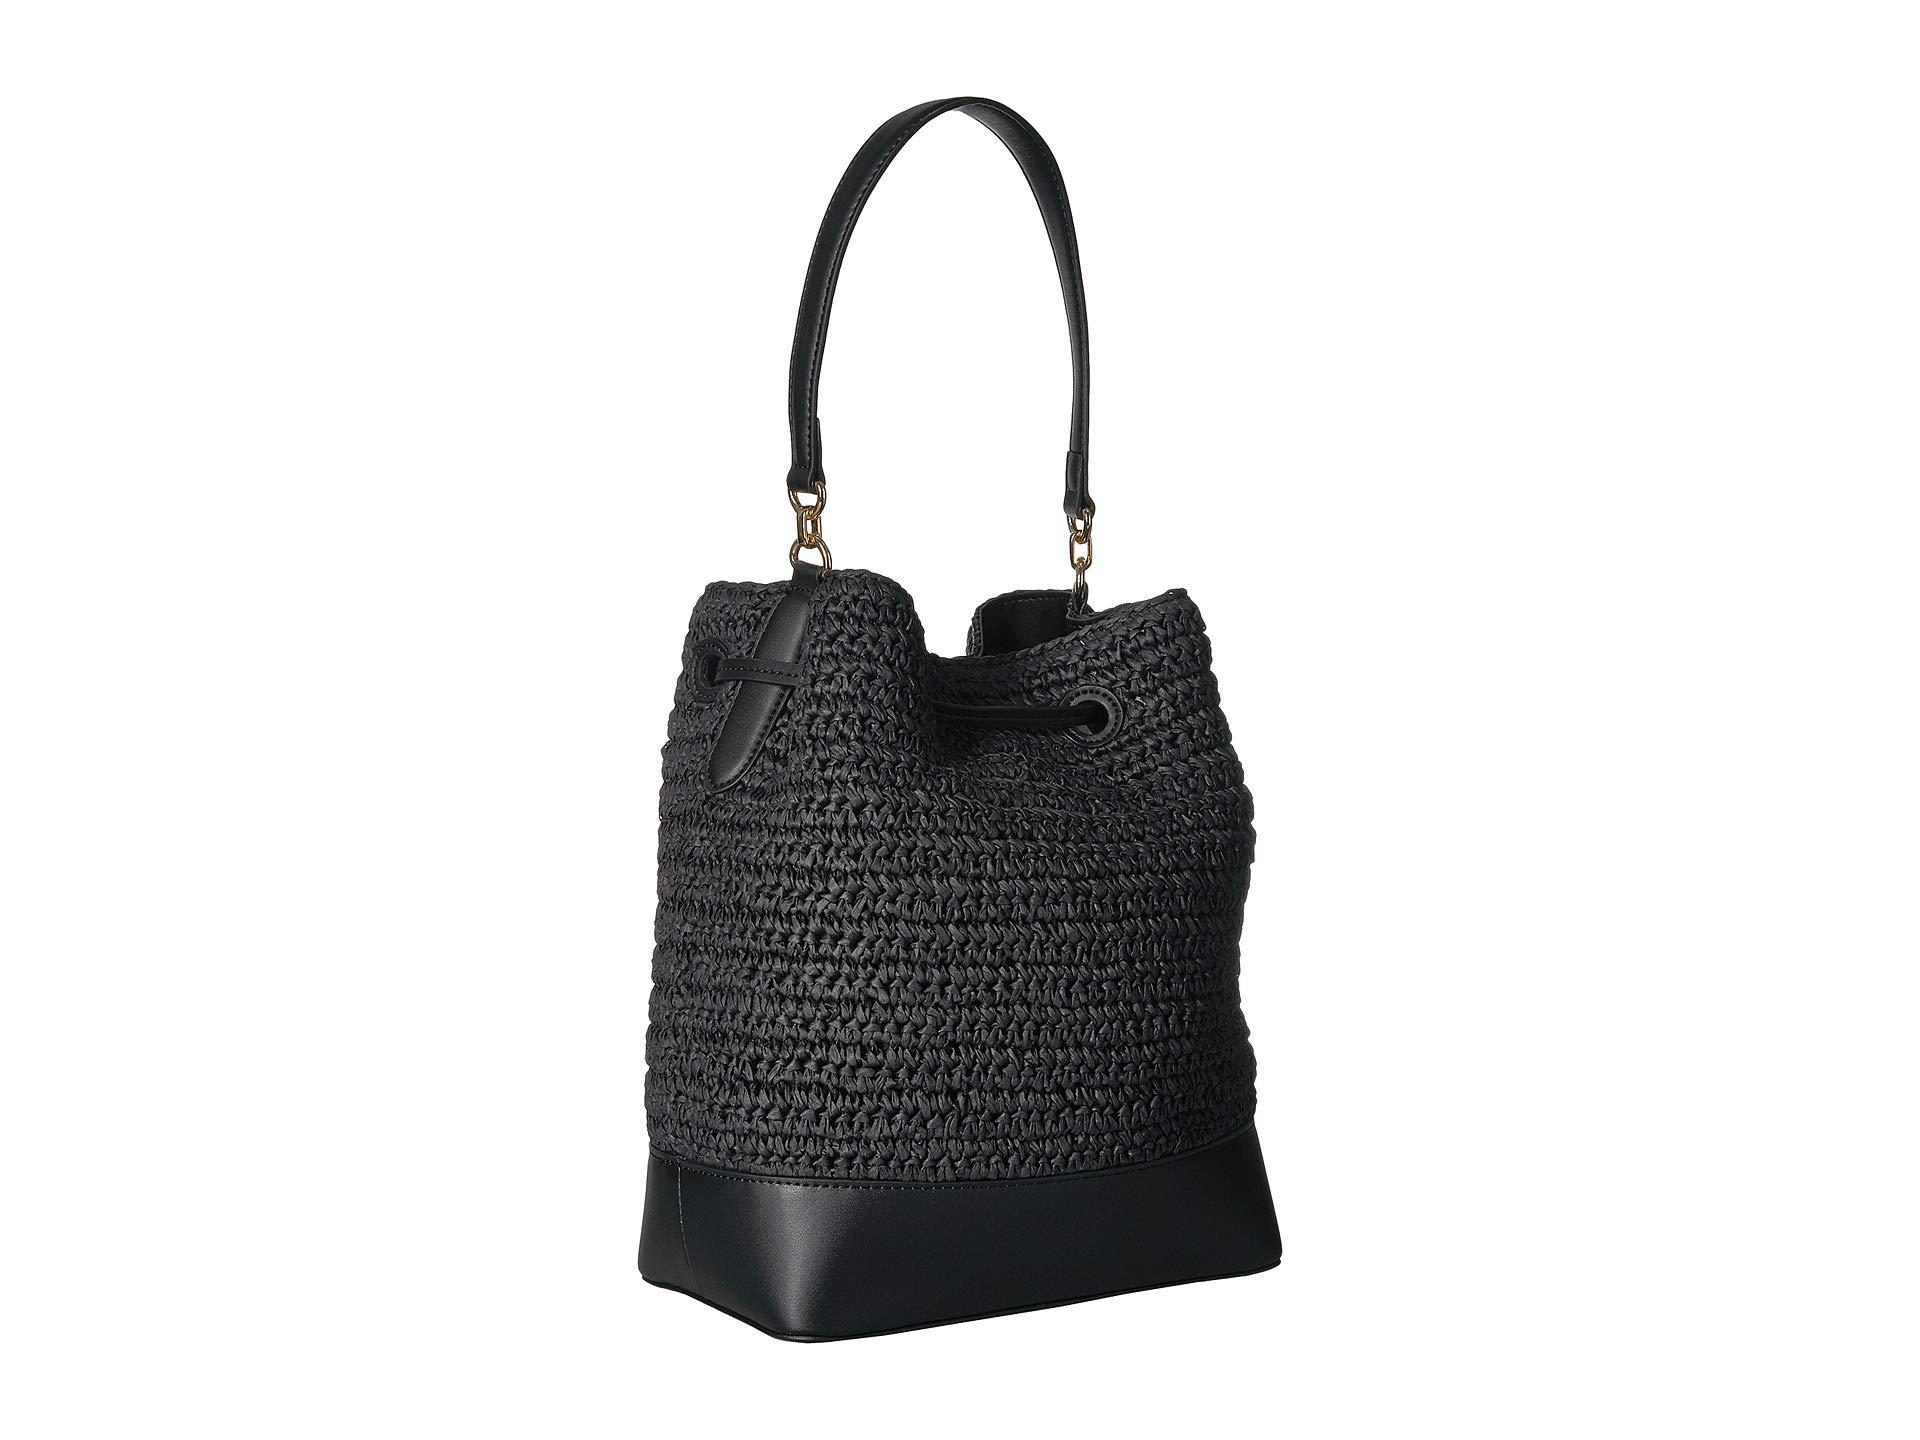 Lauren Ralph Lauren Straw Handbags | IQS Executive